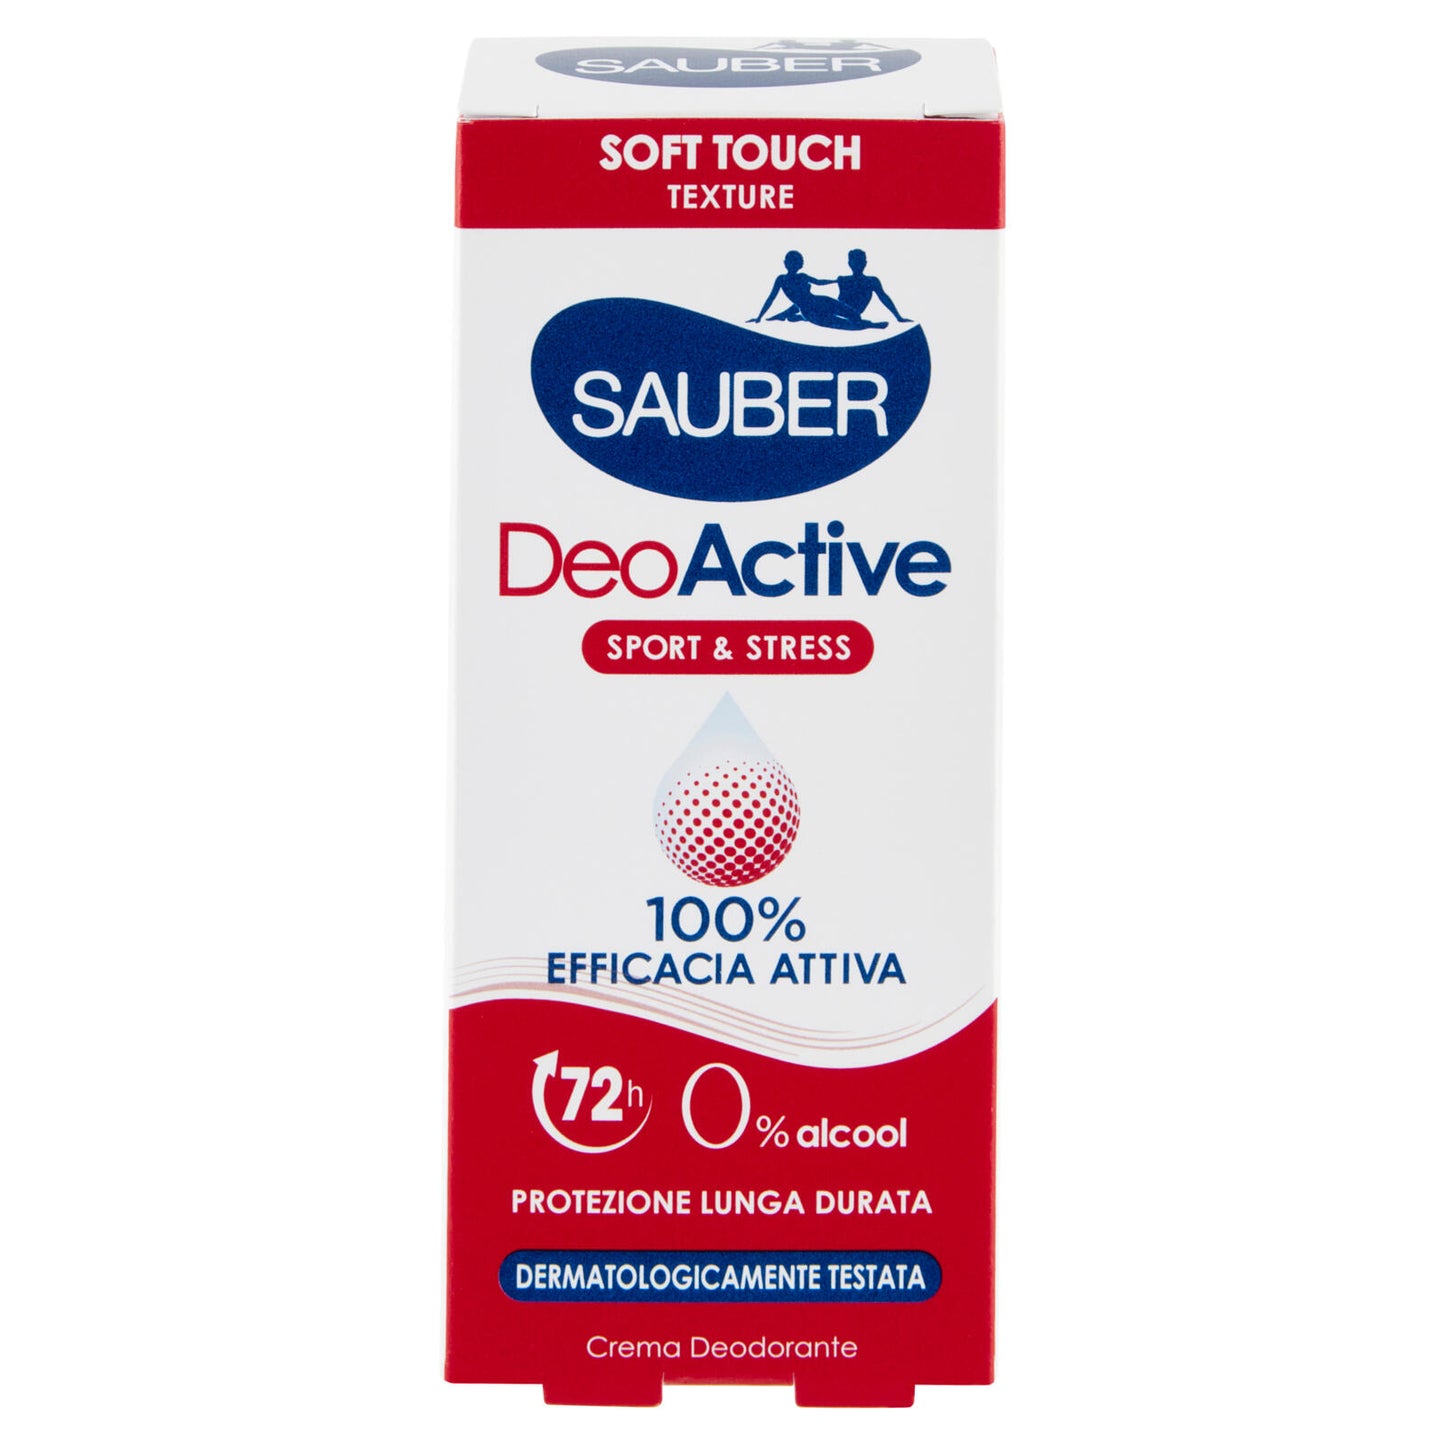 Sauber DeoActive Sport & Stress 100% Efficacia Attiva 35 ml